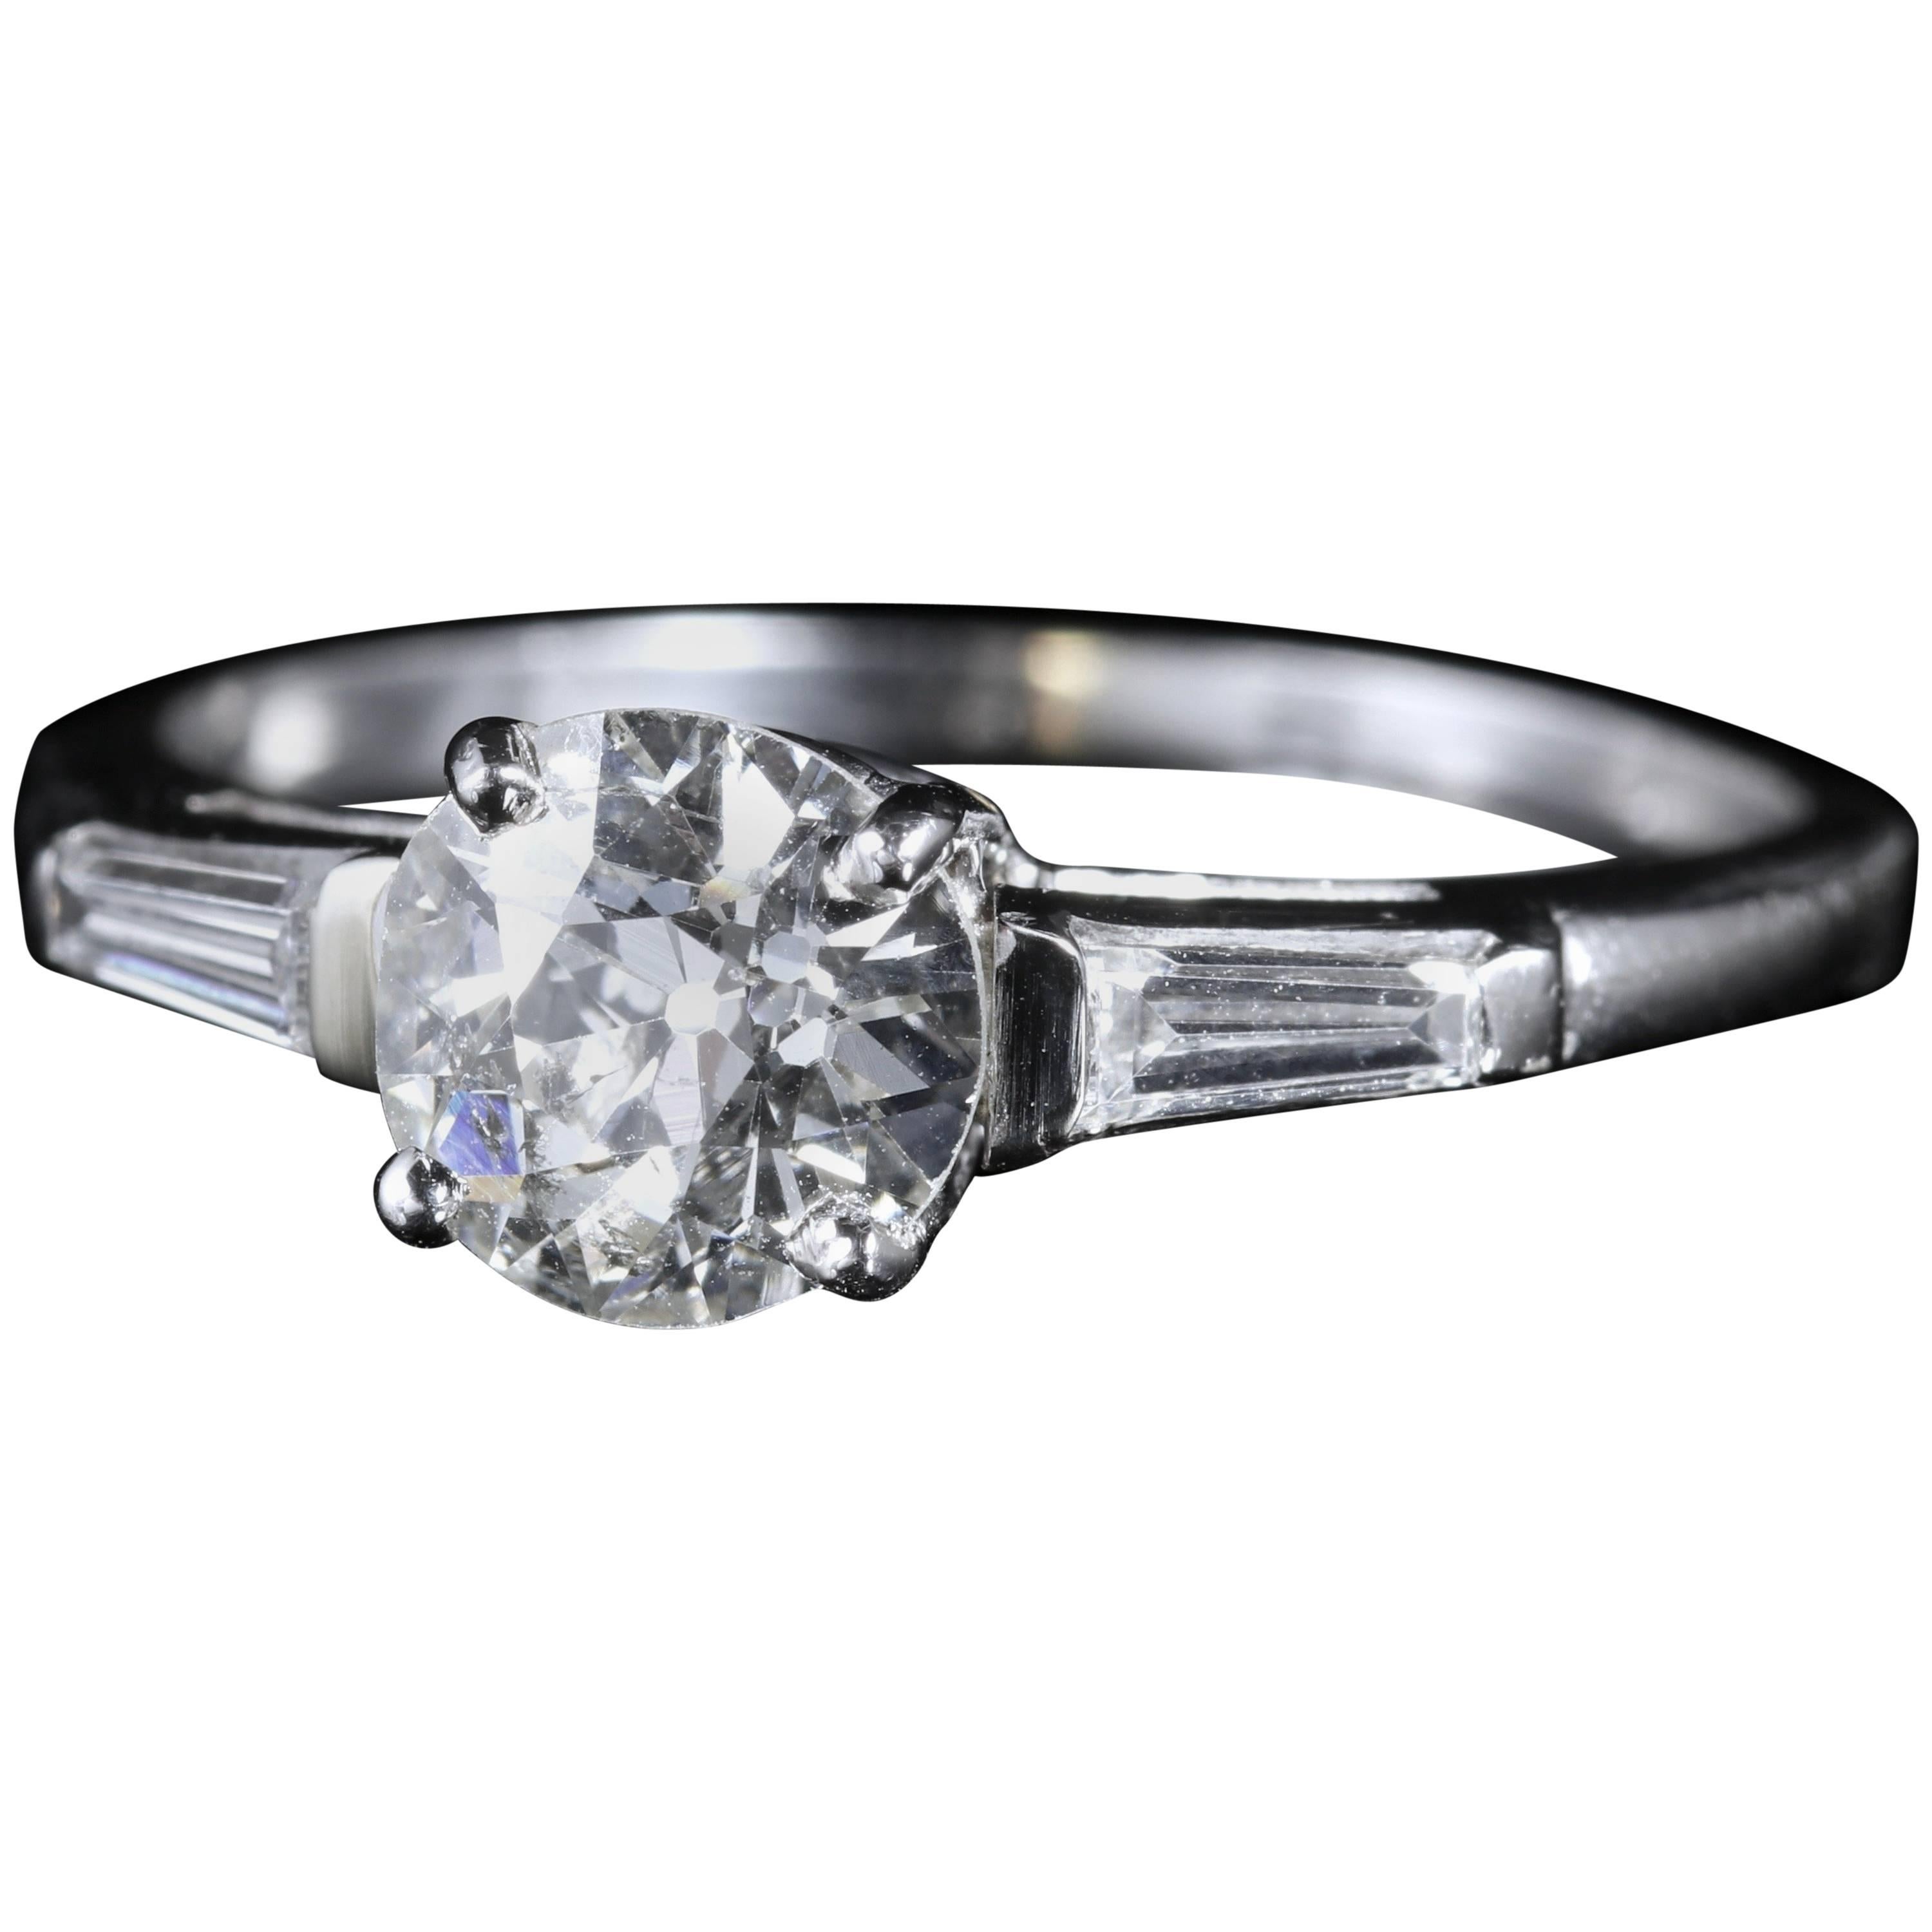 Antique Art Deco Diamond Solitaire Ring, circa 1920 Engagement Ring